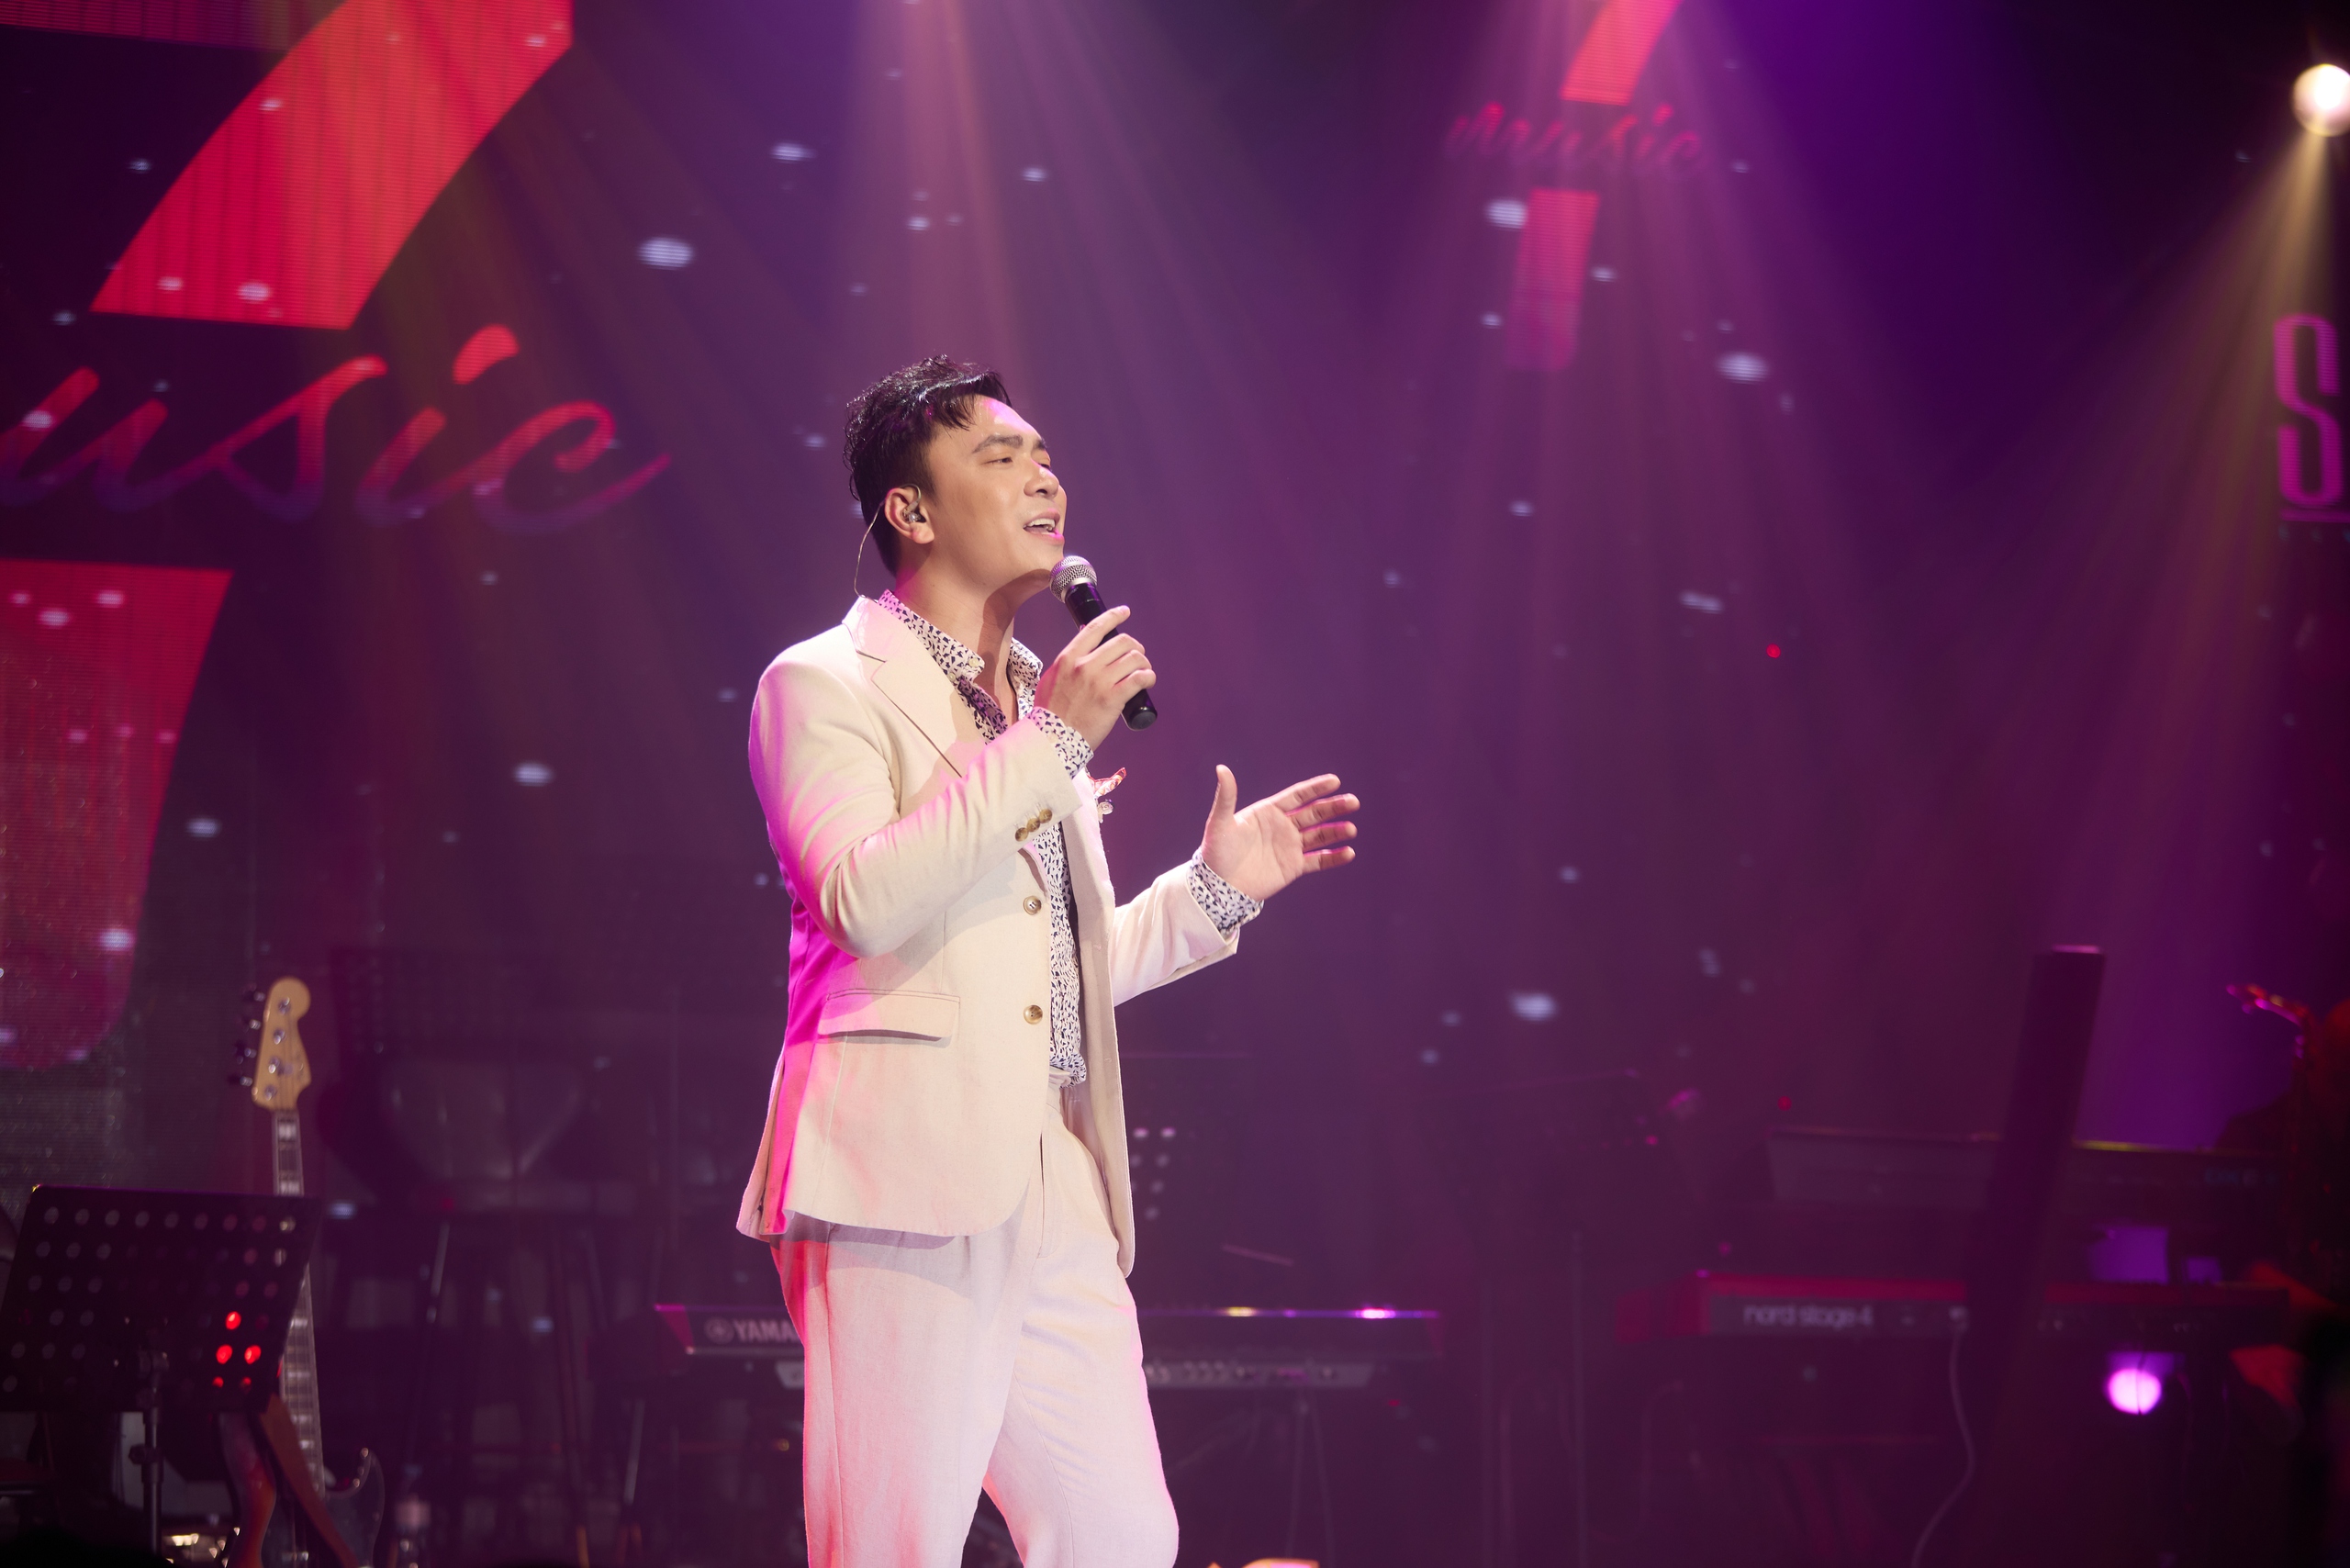 Hồ Quỳnh Hương bật khóc và bản hát live  có "1-0-2" ca khúc "Cứ để cho em"- Ảnh 3.